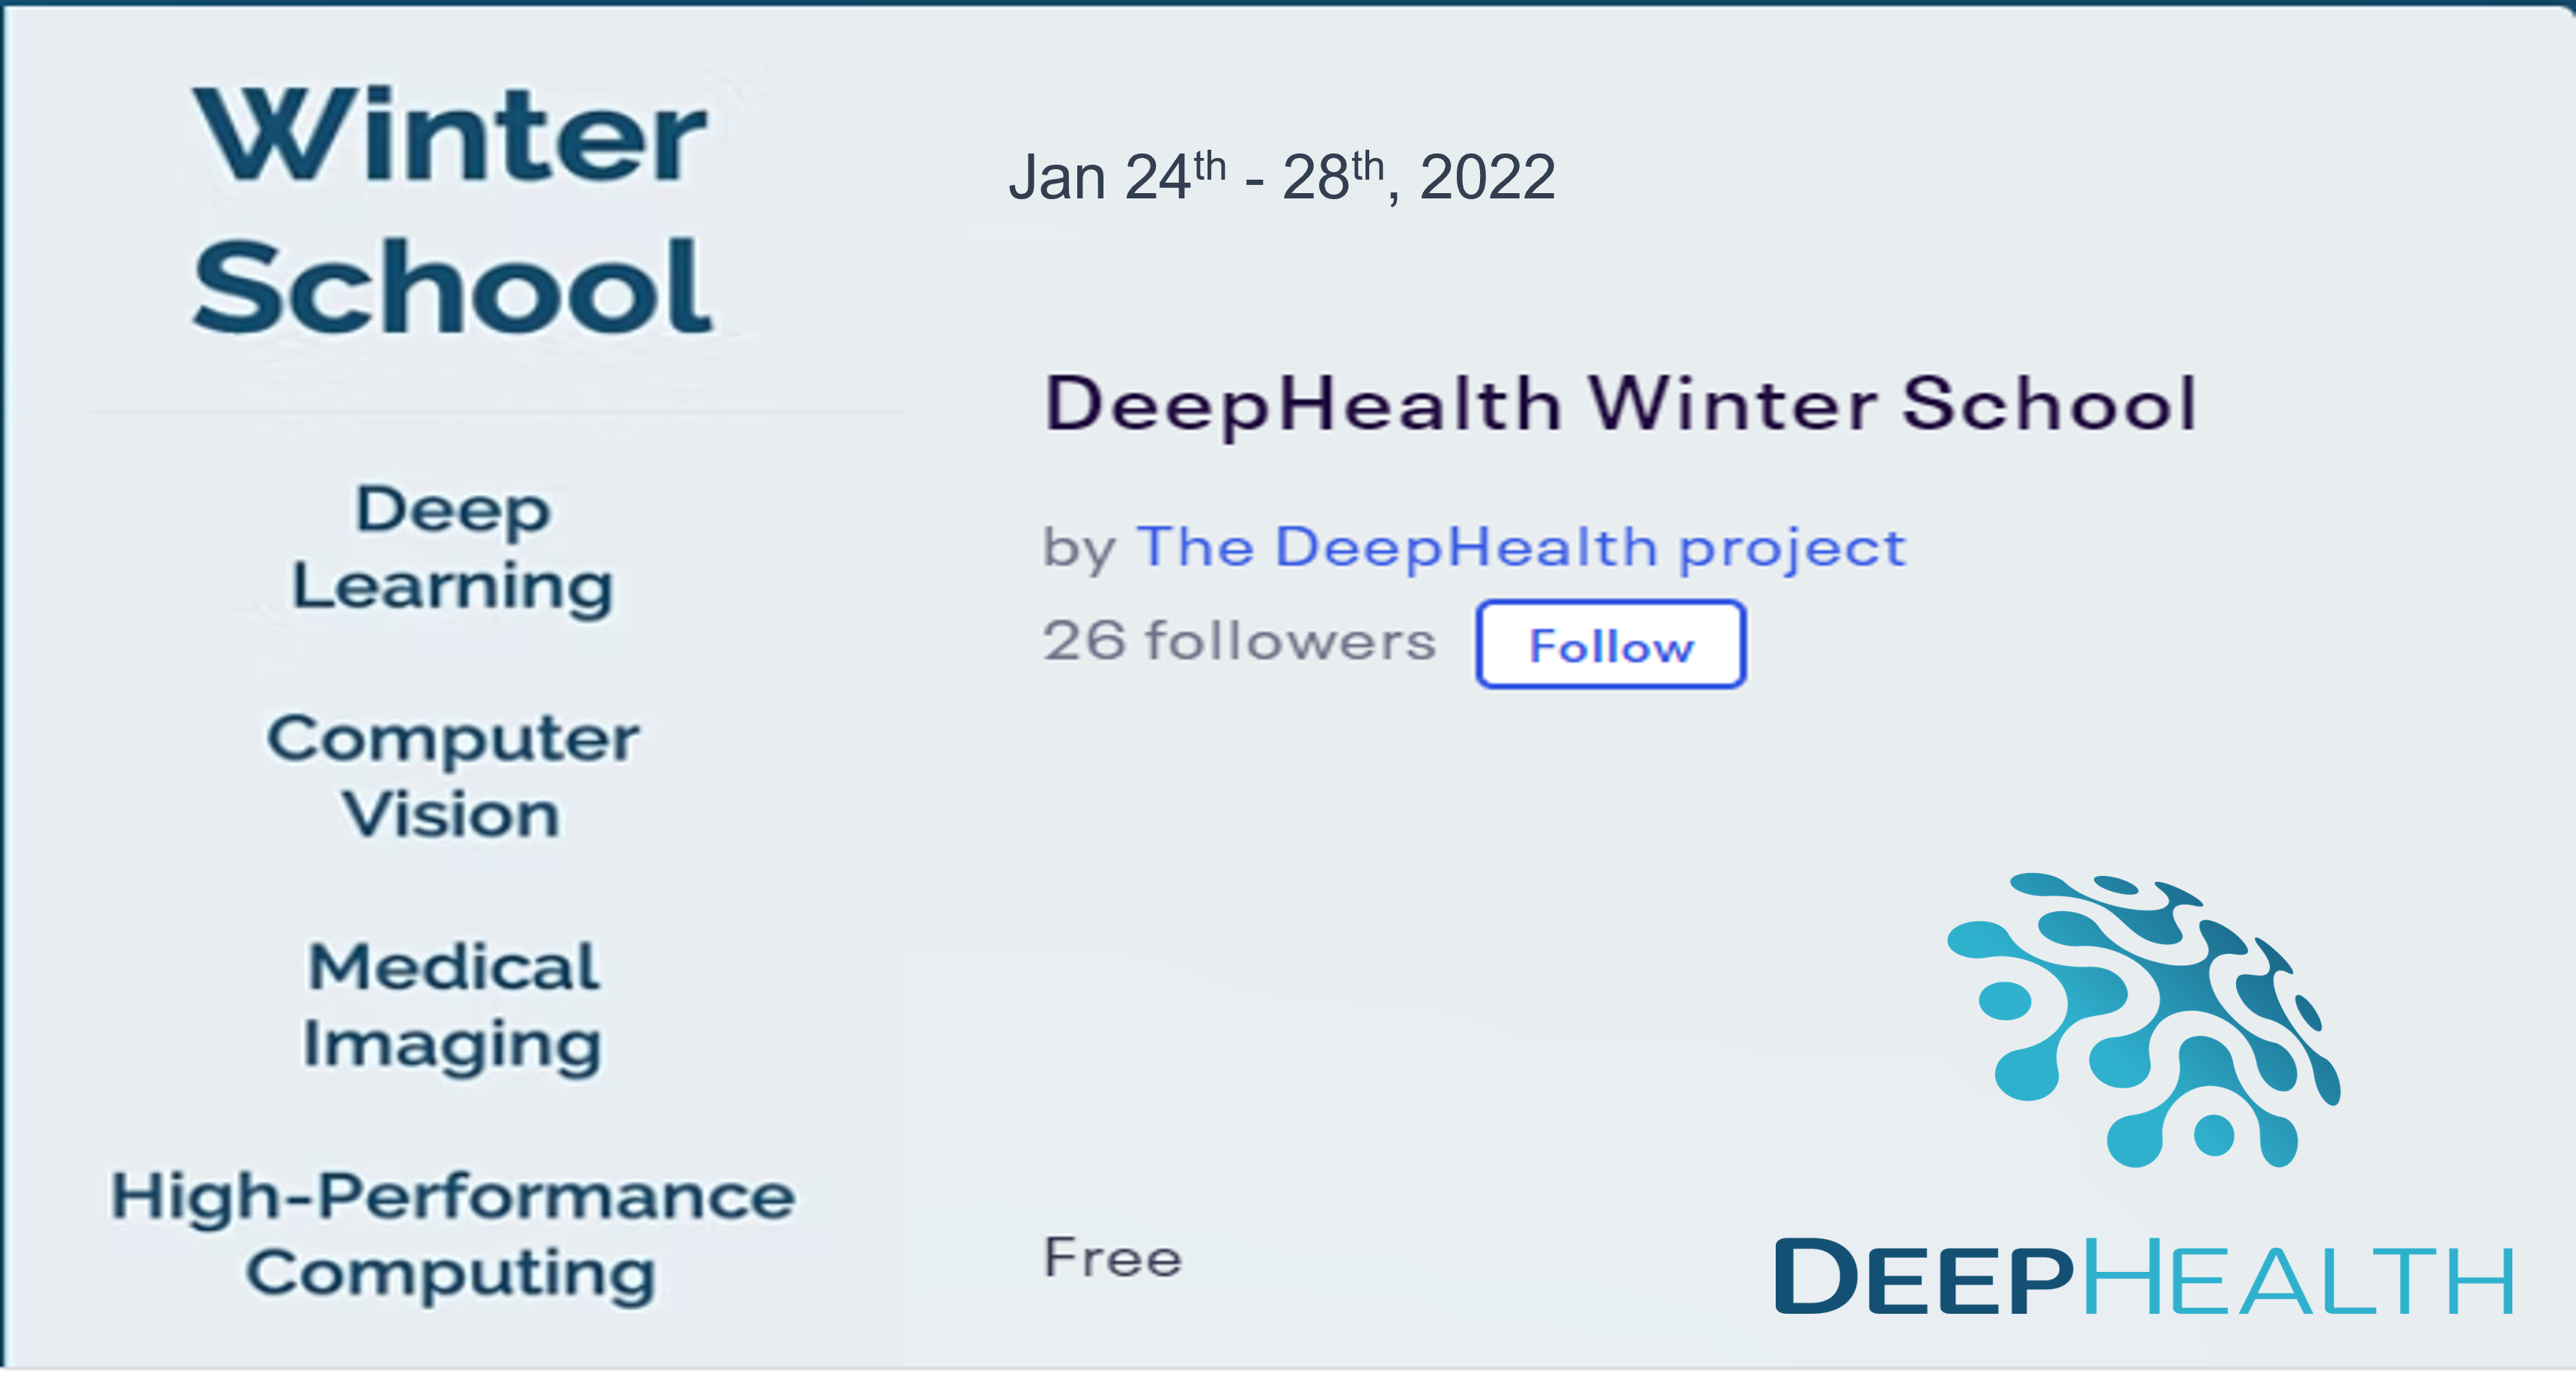 DeepHealth Winter School